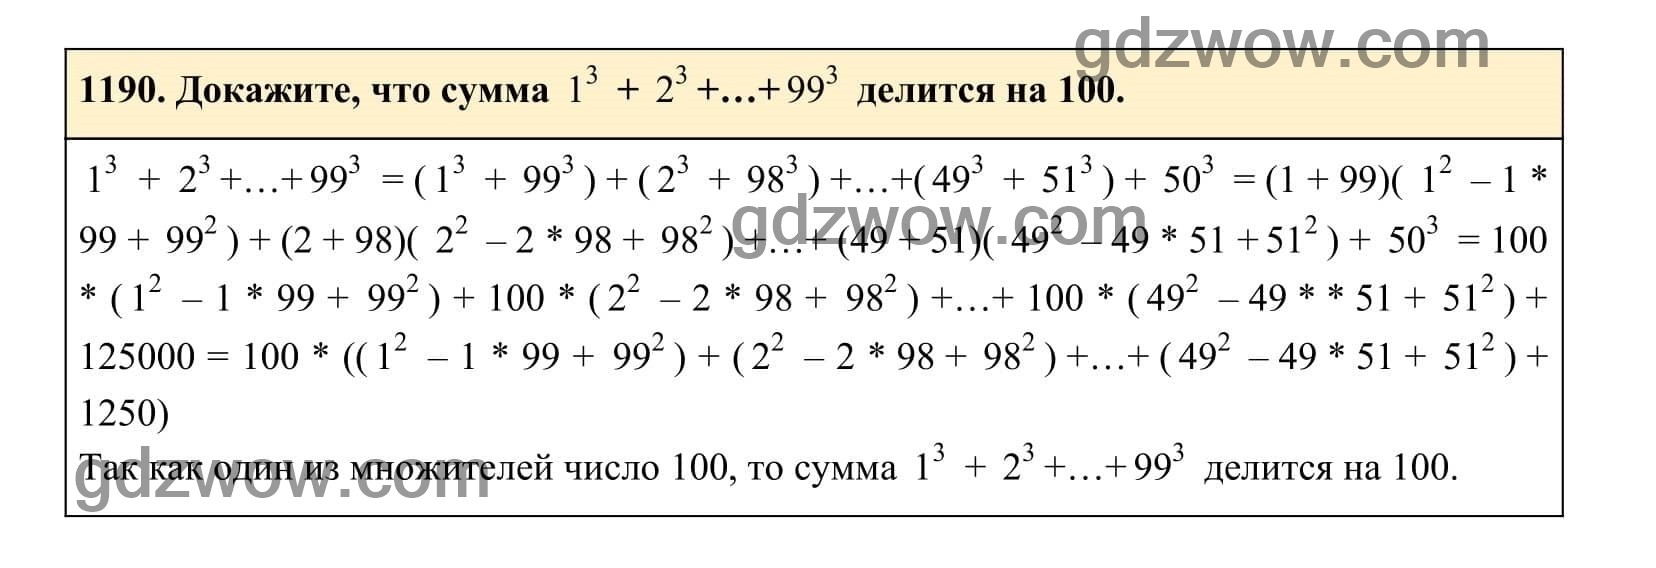 Упражнение 1190 - ГДЗ по Алгебре 7 класс Учебник Макарычев (решебник) - GDZwow